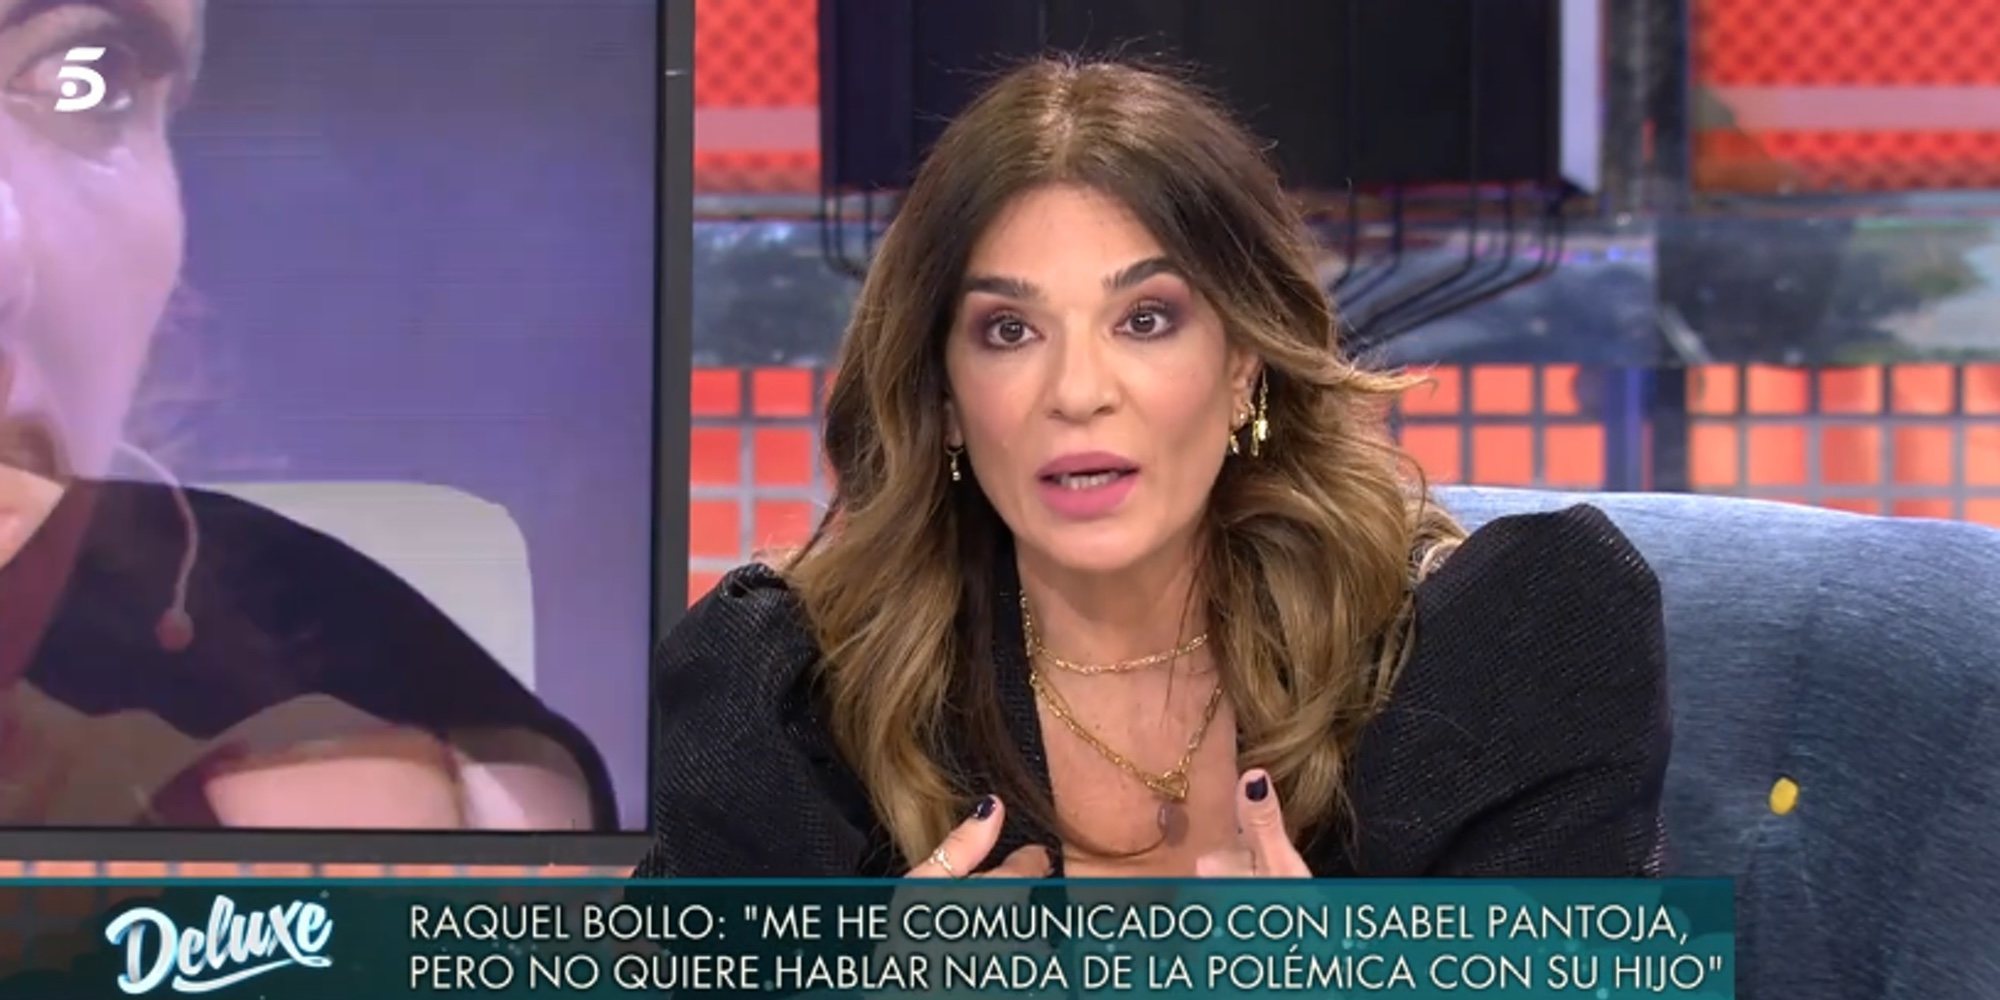 Raquel Bollo muy sincera sobre la situación de Isabel Pantoja: "Ha perdido la cabeza"